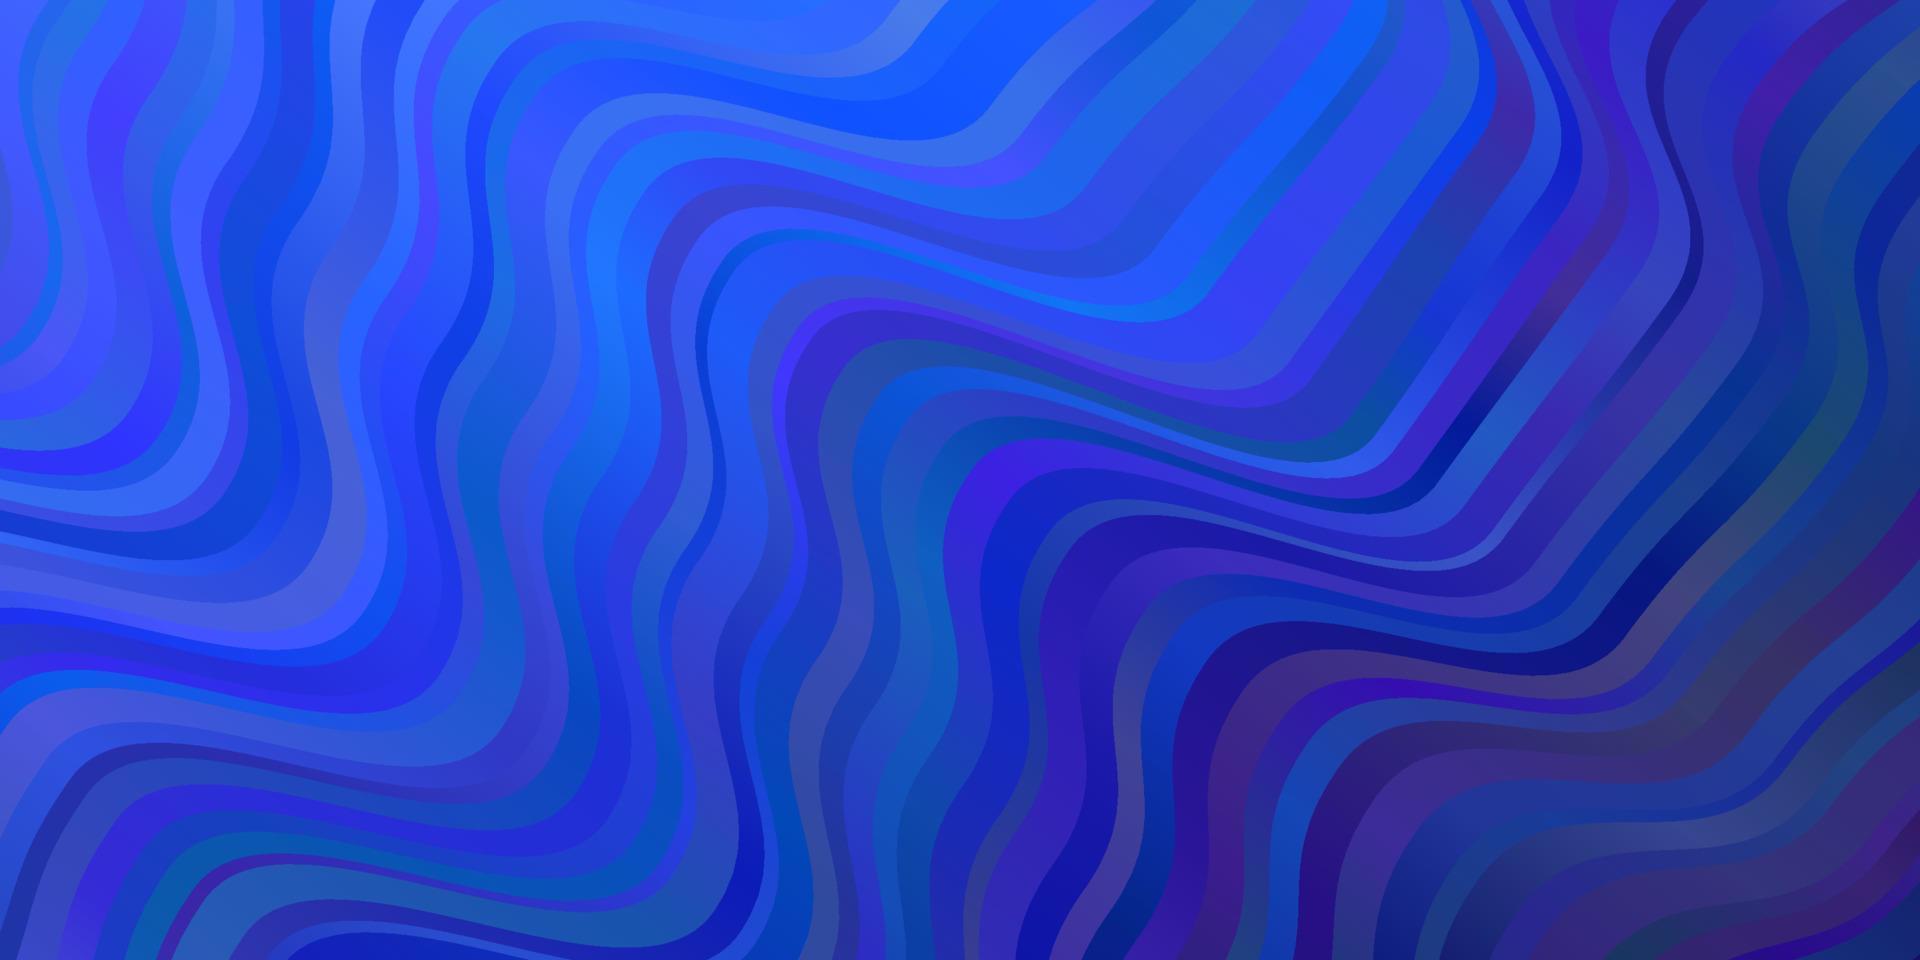 padrão de vetor azul escuro com curvas.